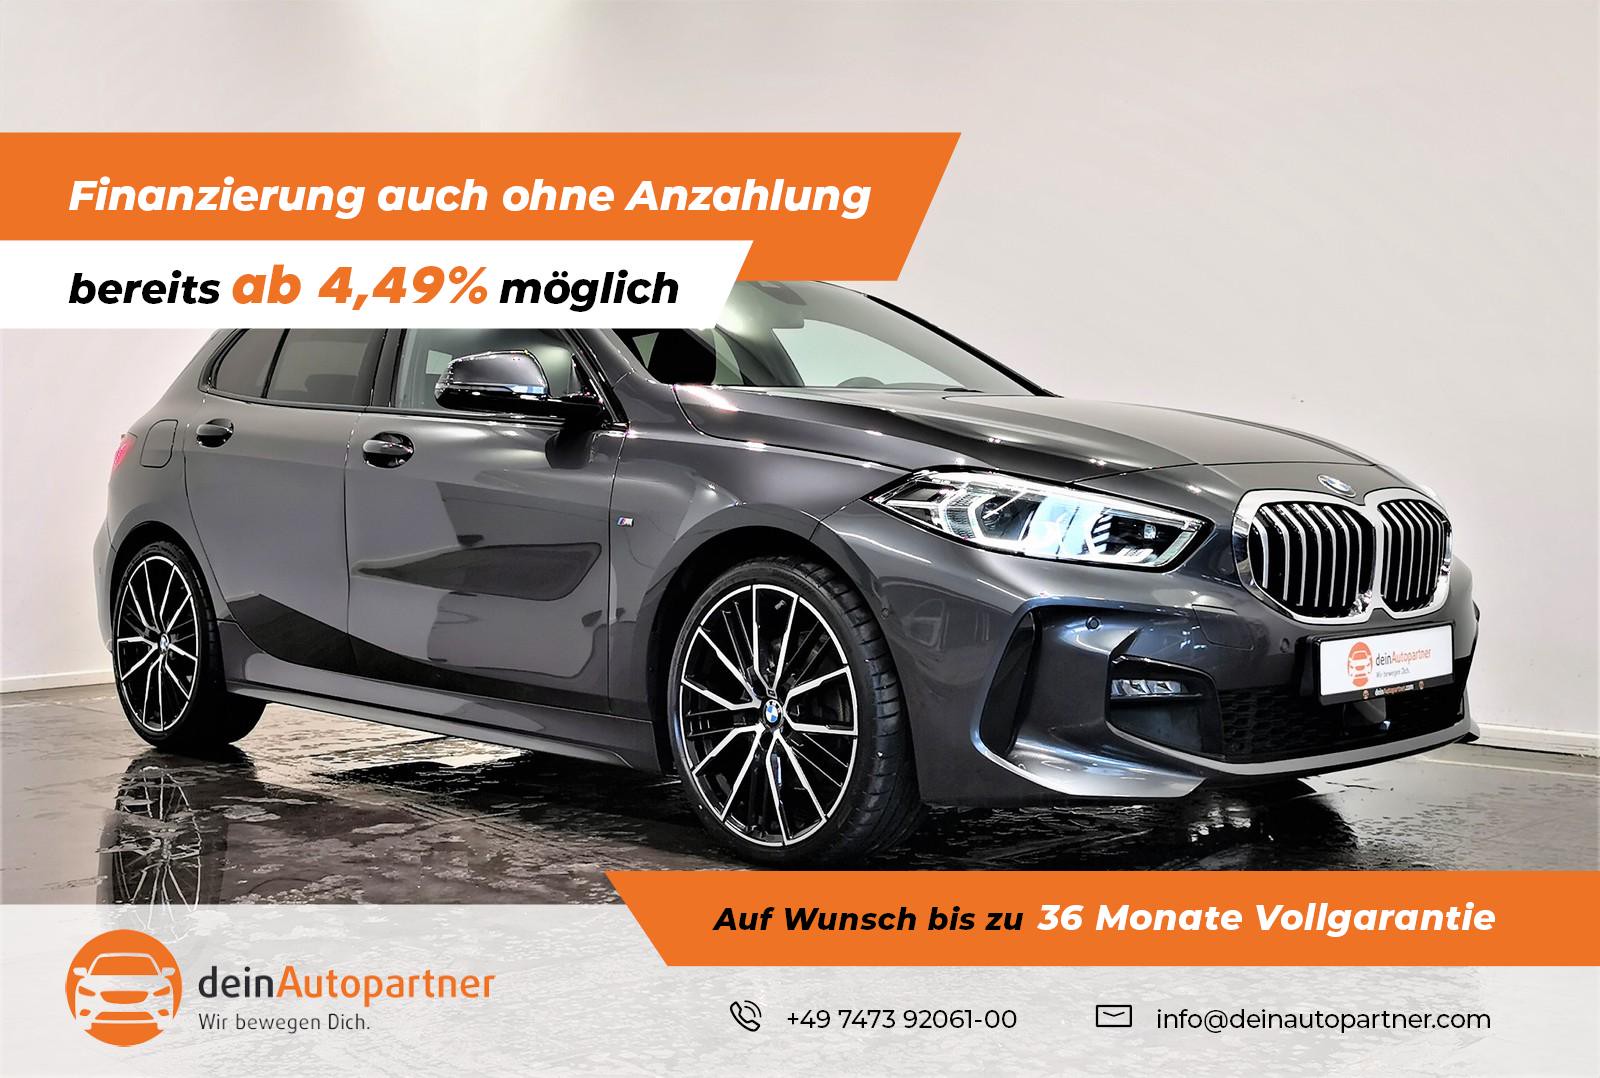 BMW 118 i M Sport gebraucht kaufen in Mössingen Preis 23800 eur - Int.Nr.:  S05913 VERKAUFT